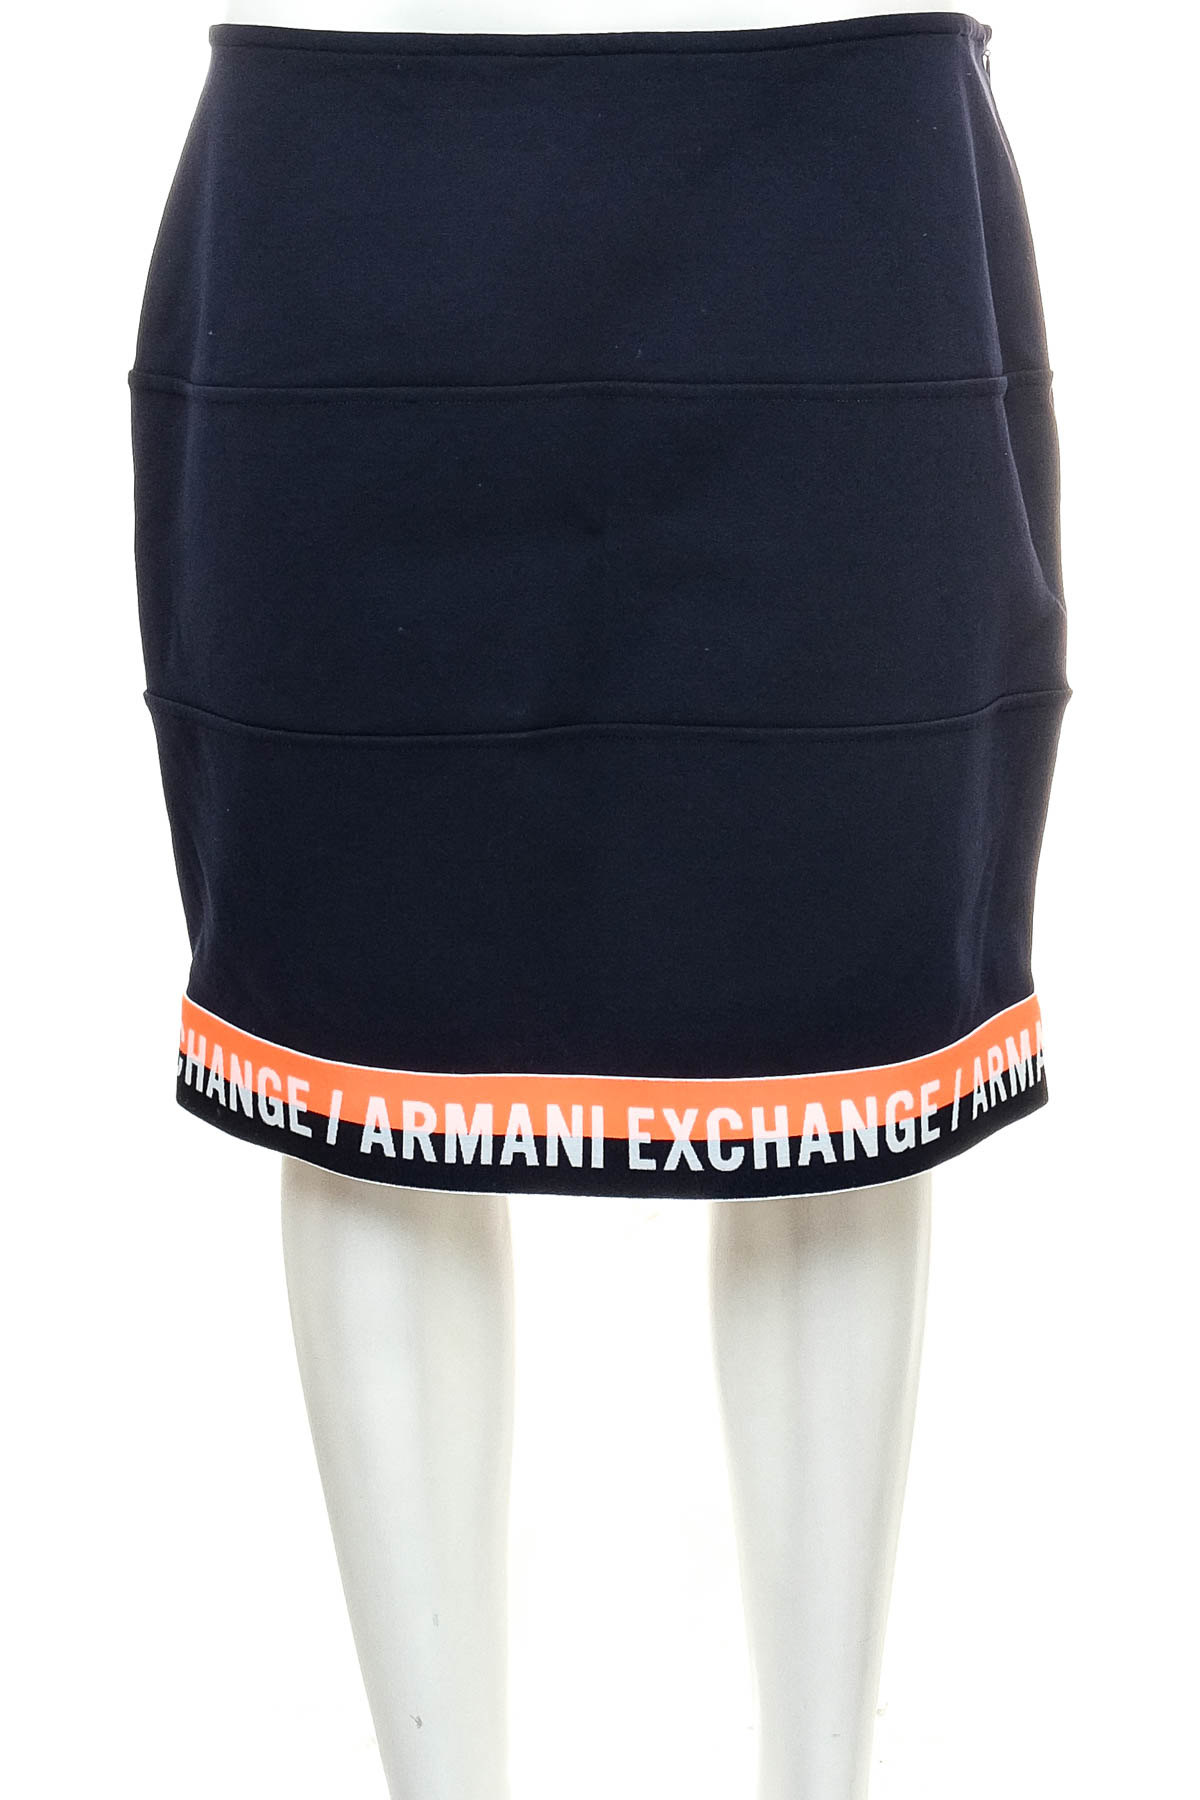 Skirt - Armani Exchange - 0